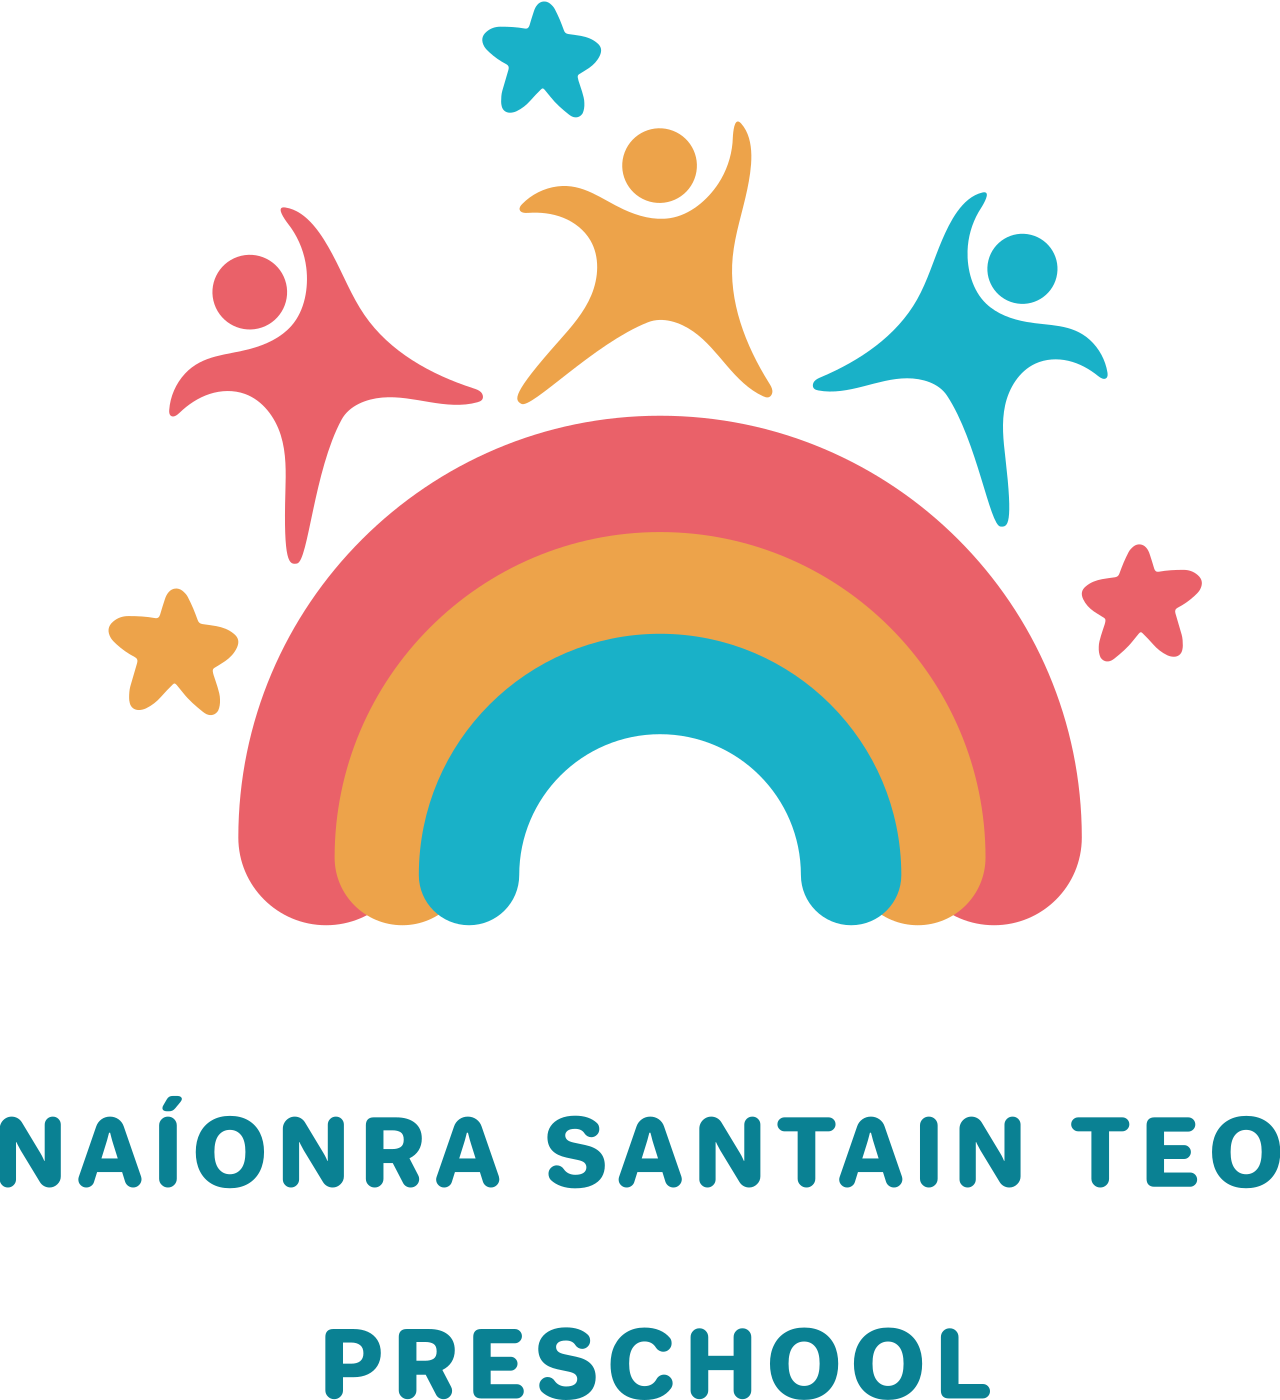 Naíonra Santain Teo 's logo